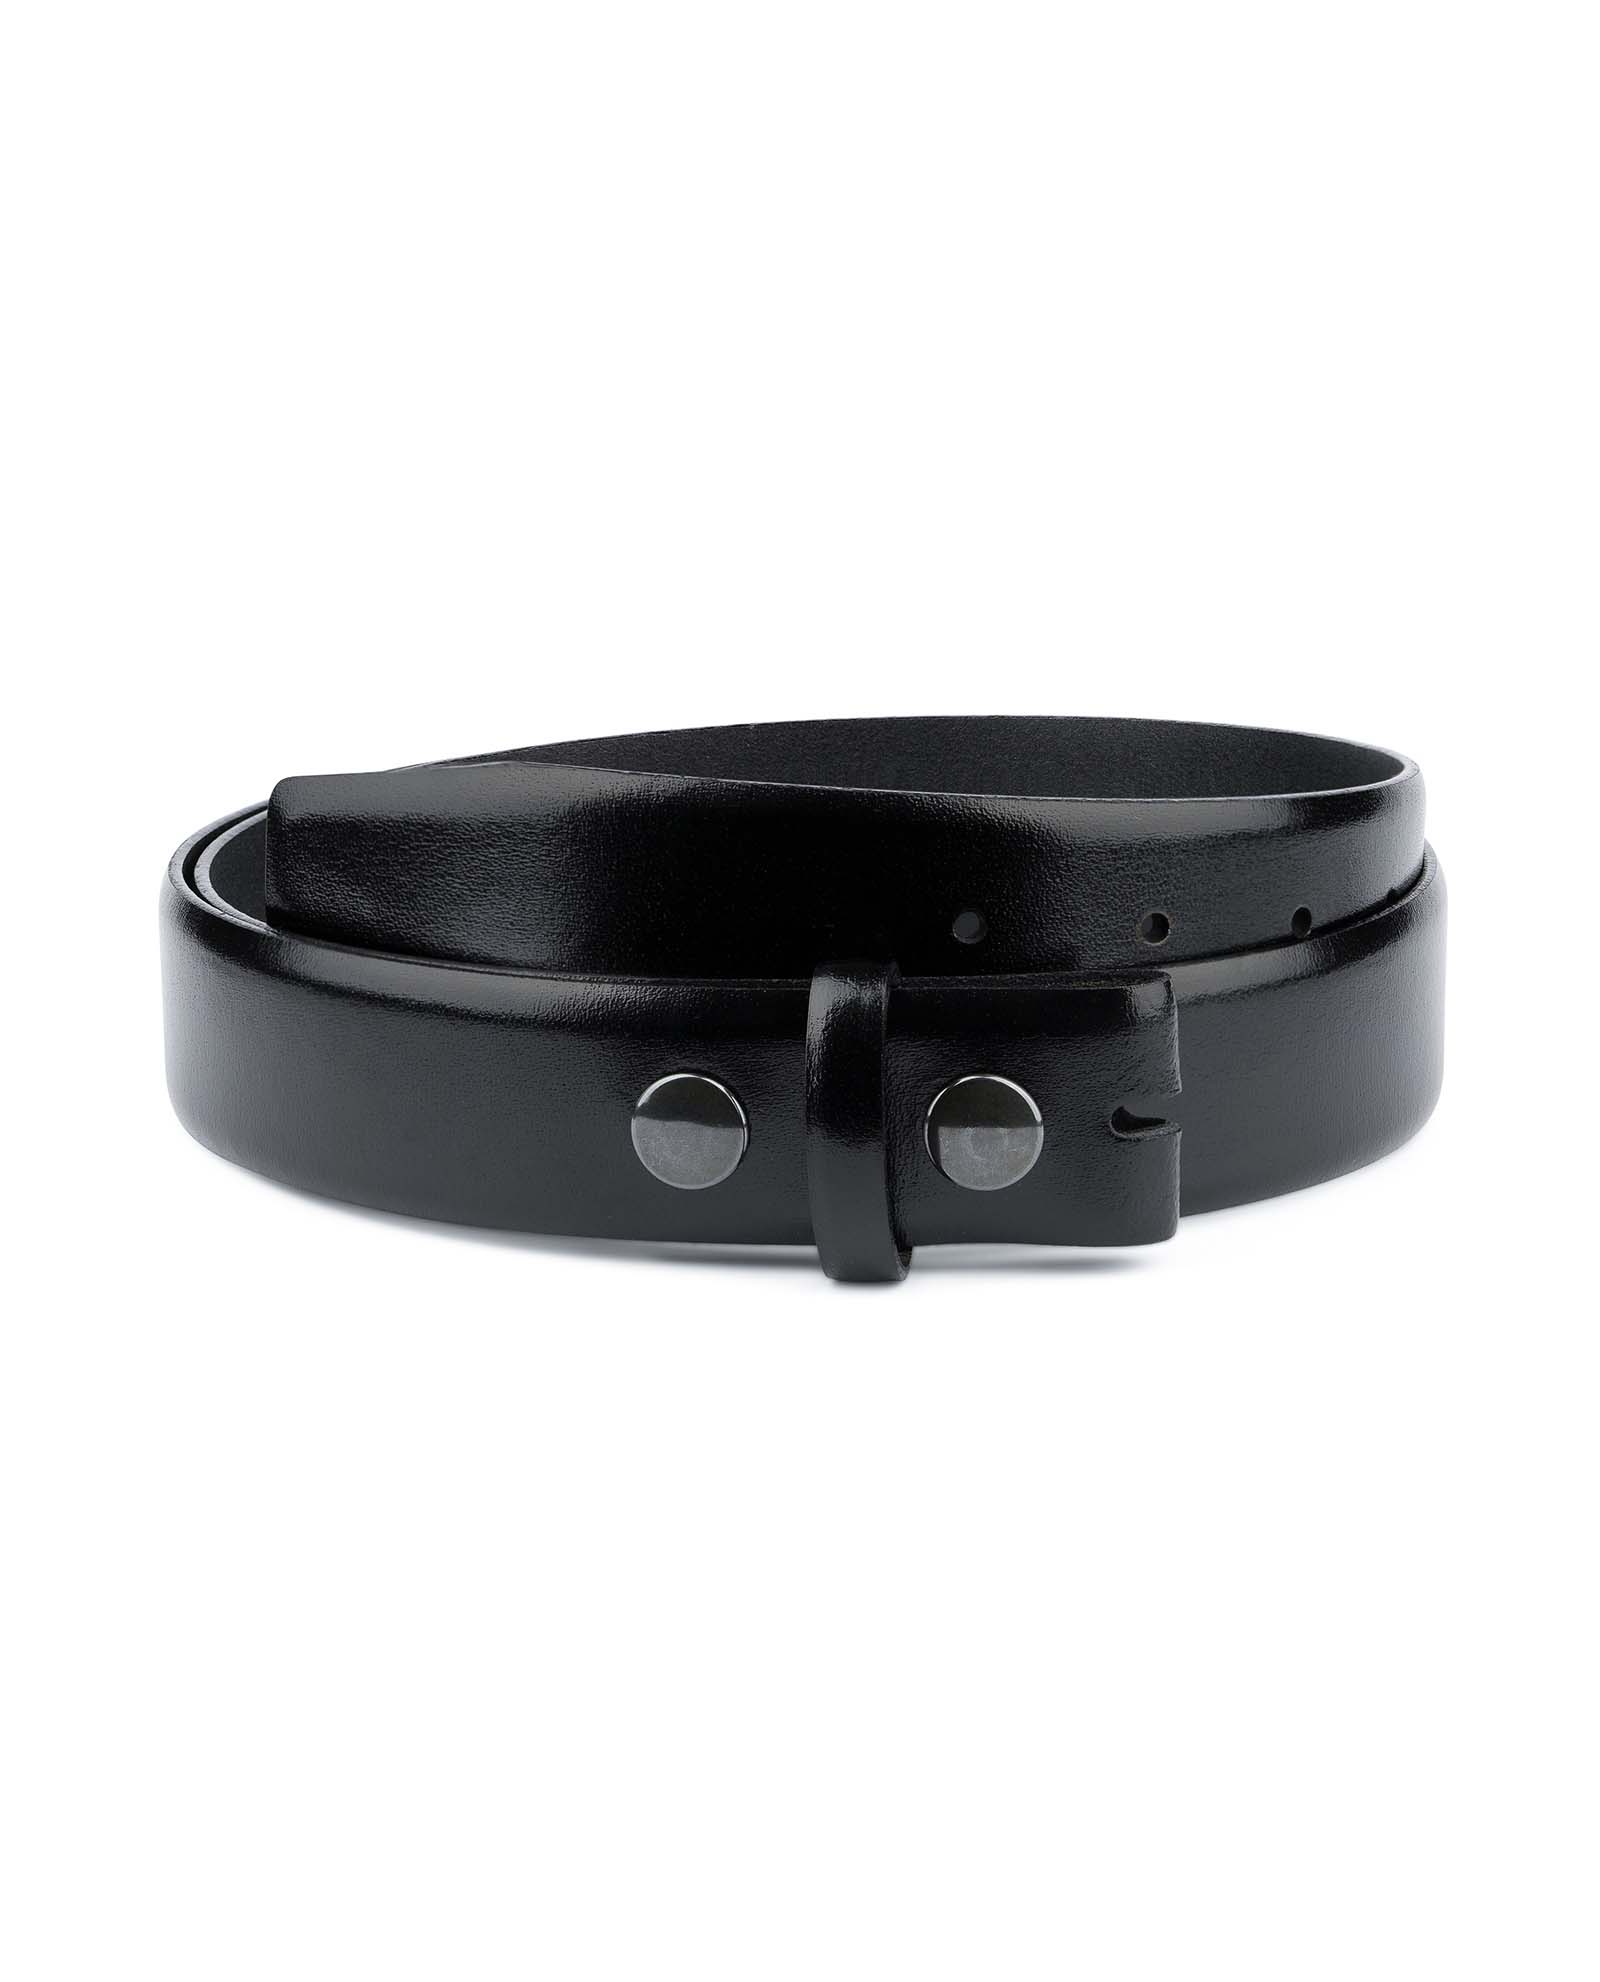 Black Plain Solid Leather Belt NO BUCKLE Removable buckle New Men Women S M L XL 